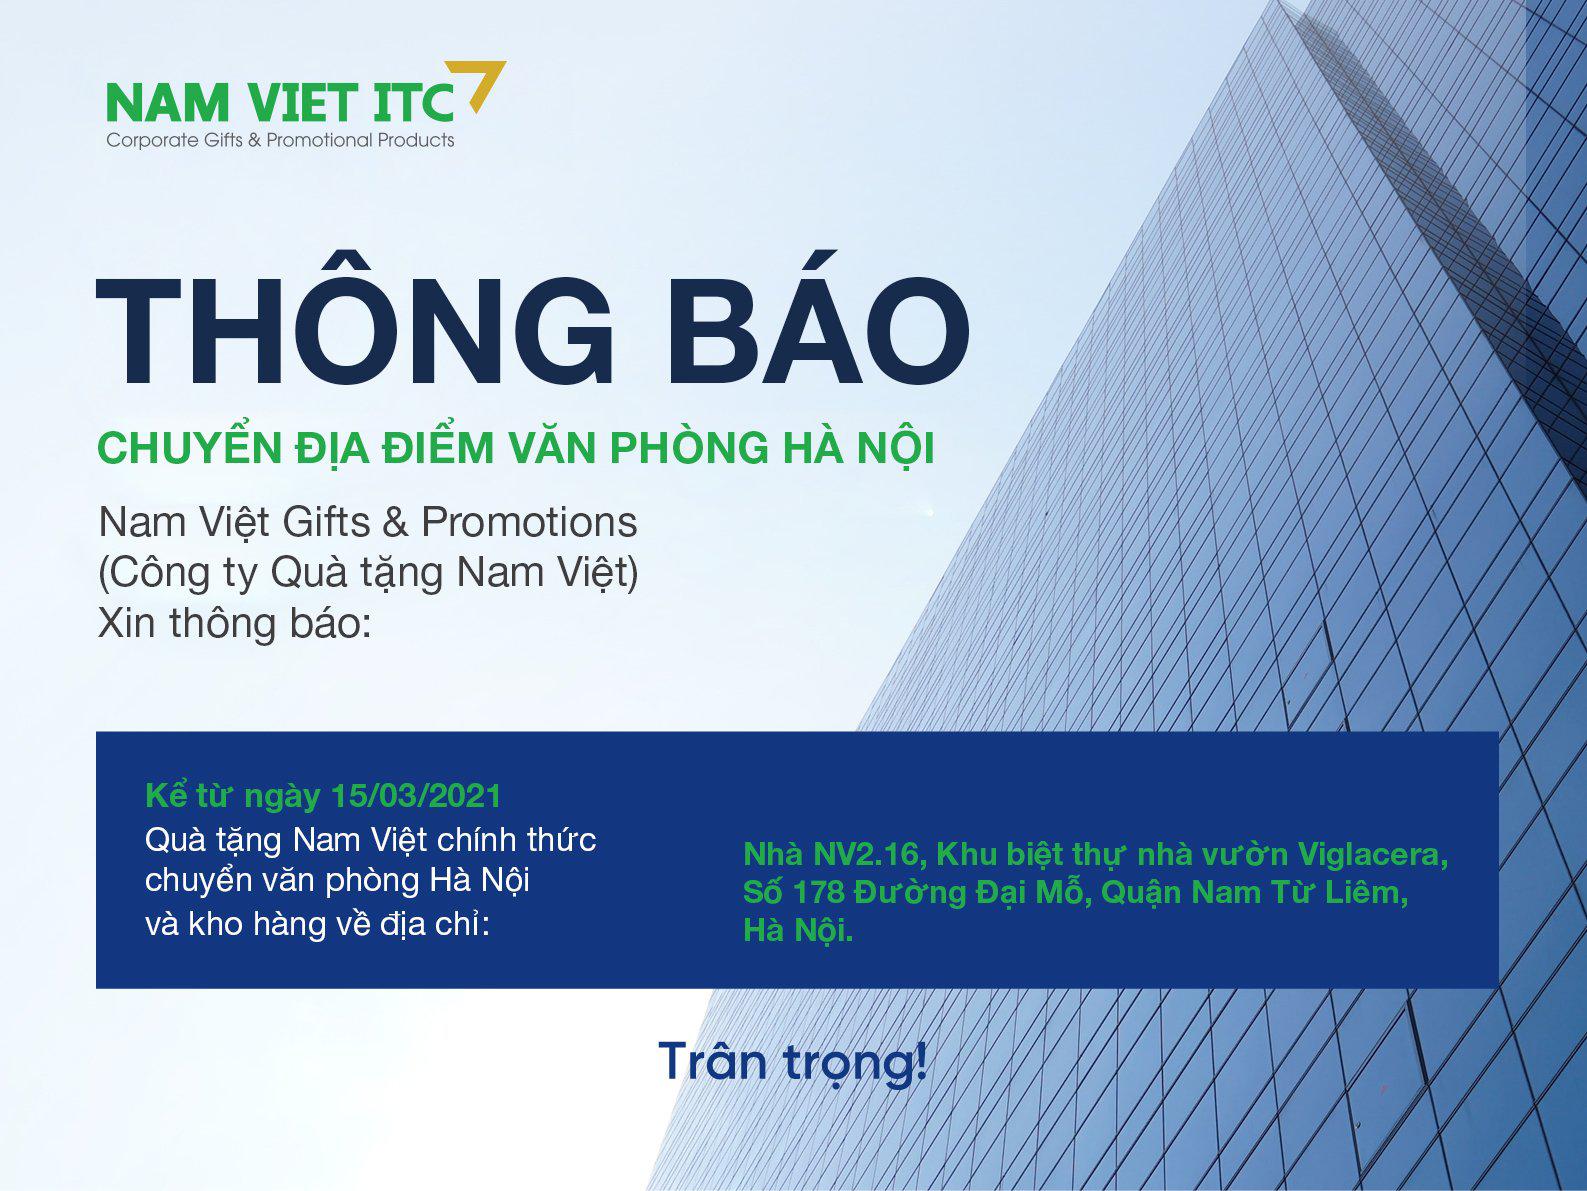 TB thay đổi địa điểm văn phòng làm việc Quà tặng Nam Việt